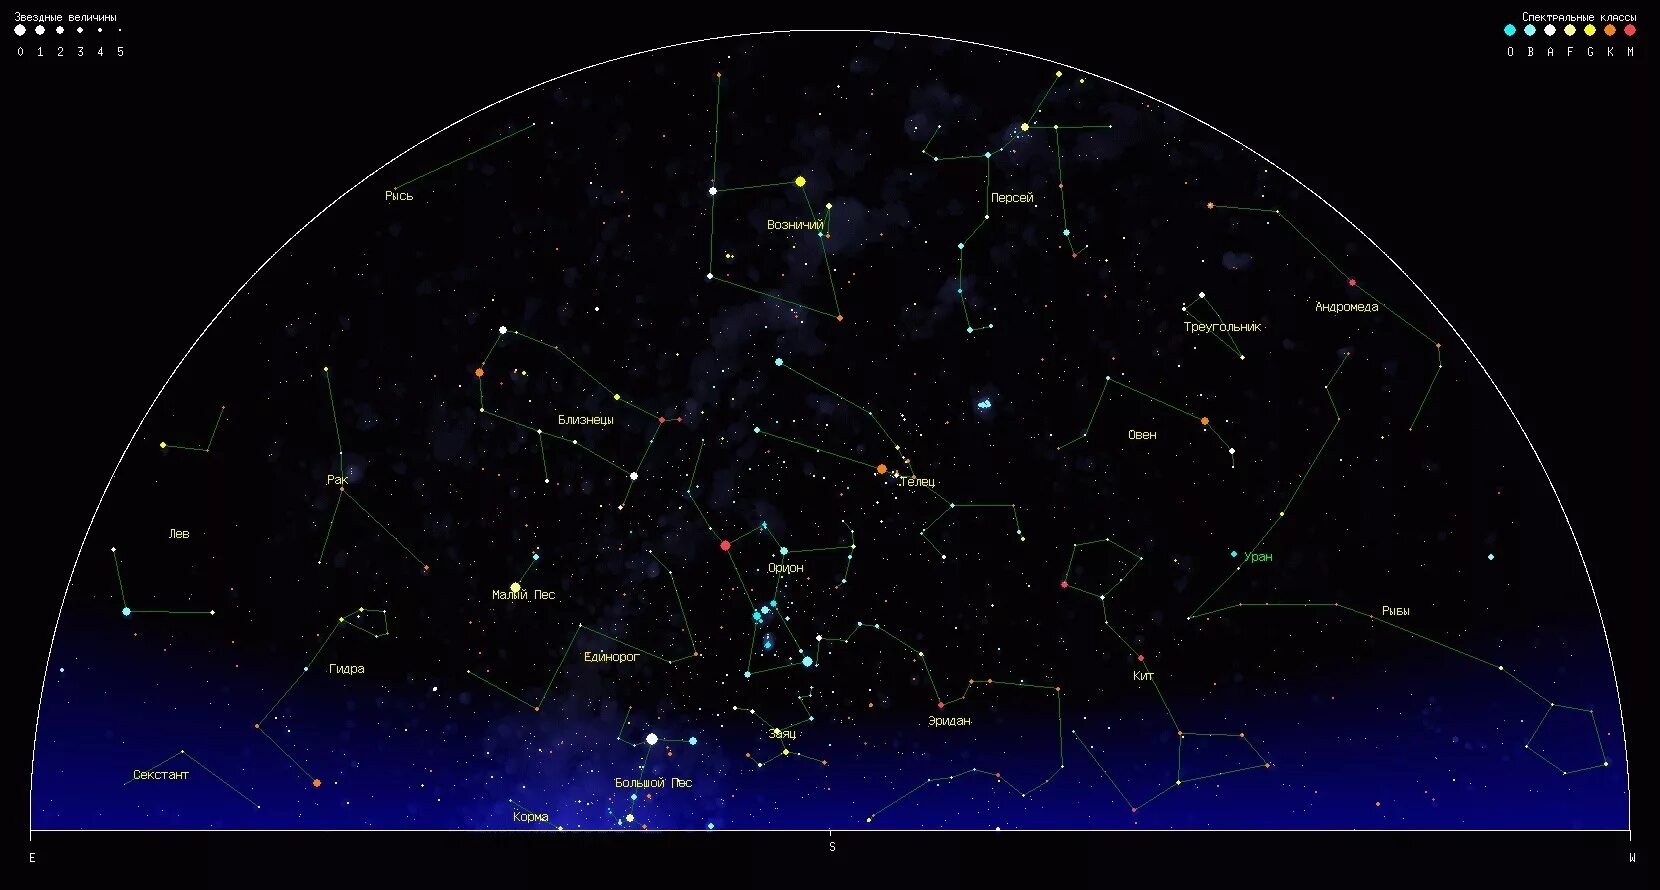 Созвездие августа. Созвездия летнего неба Северного полушария. Карта звёздного неба Северное полушарие большая Медведица. Орион на карте звездного неба Северное полушарие. Видимые созвездия Северного полушария.